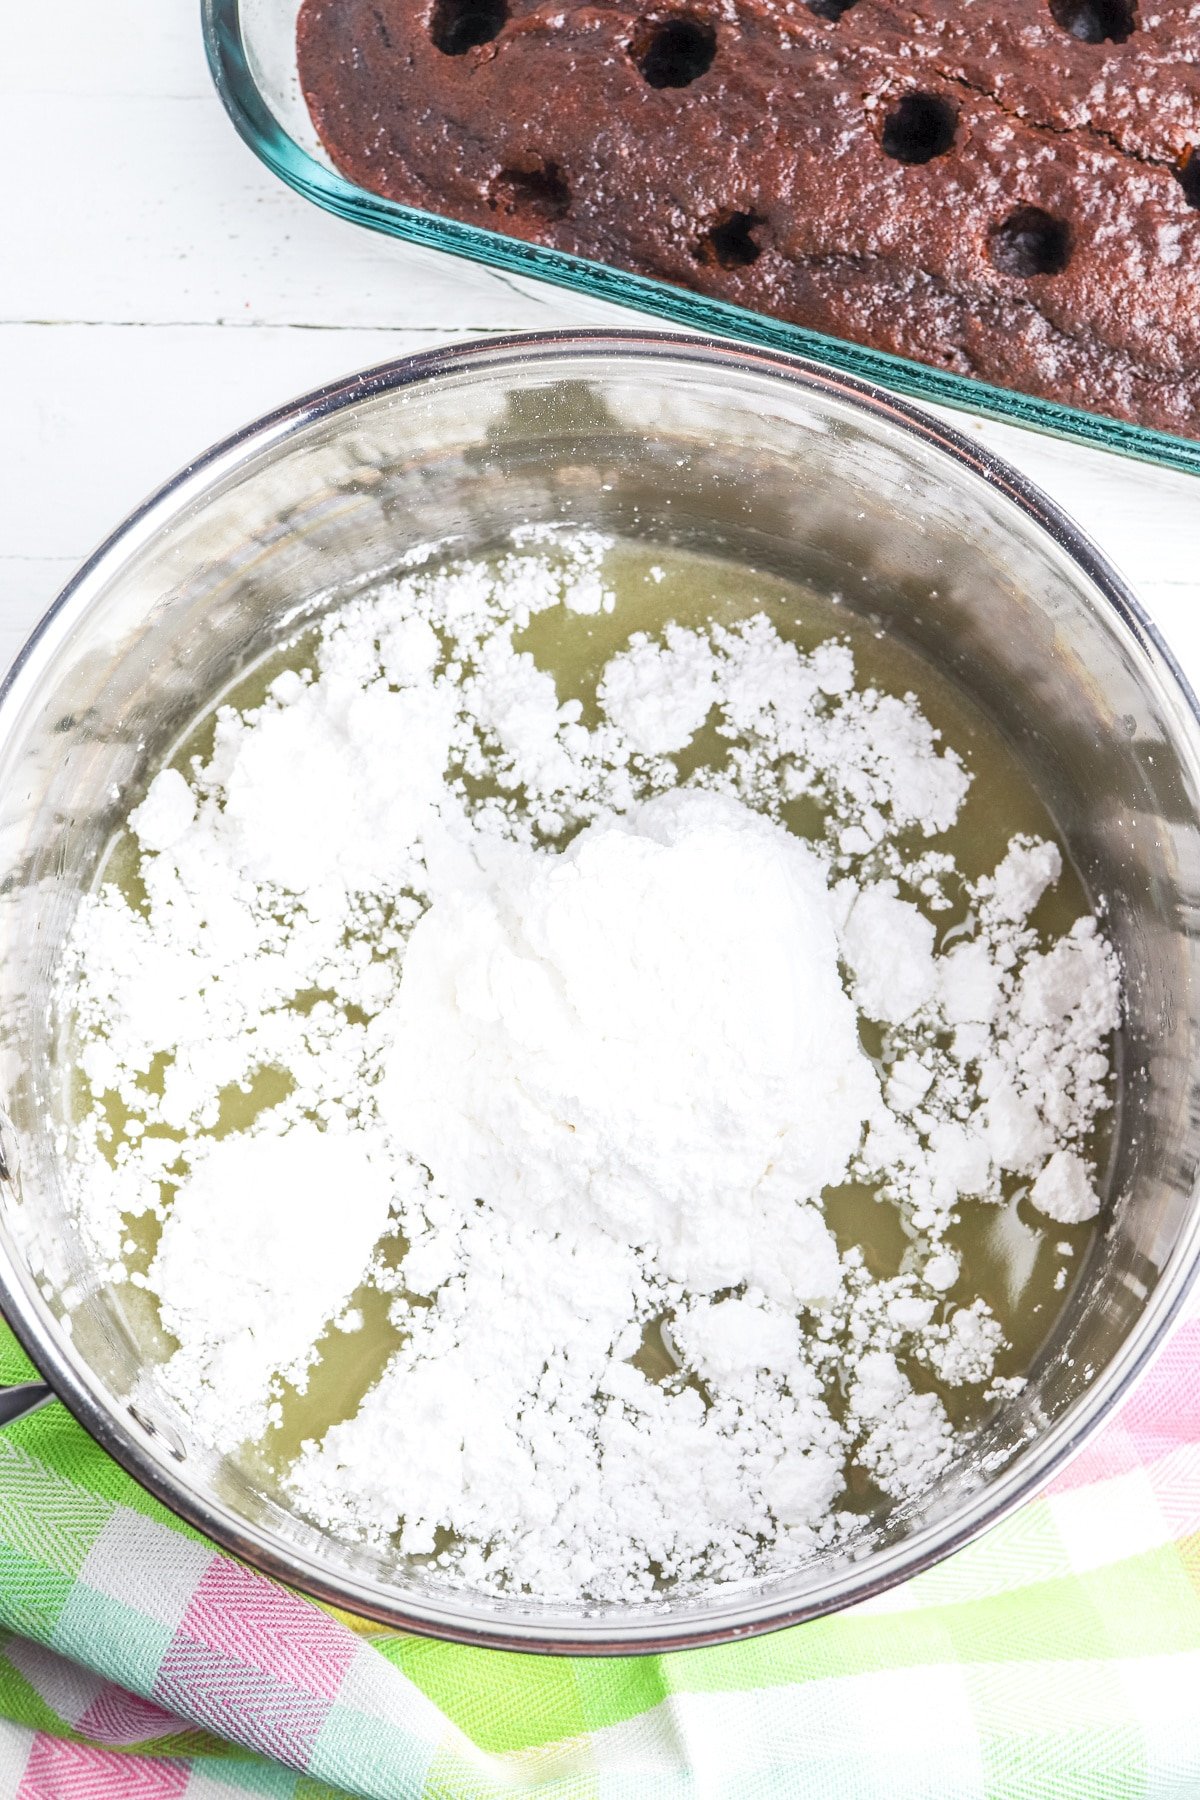 stir in powdered sugar